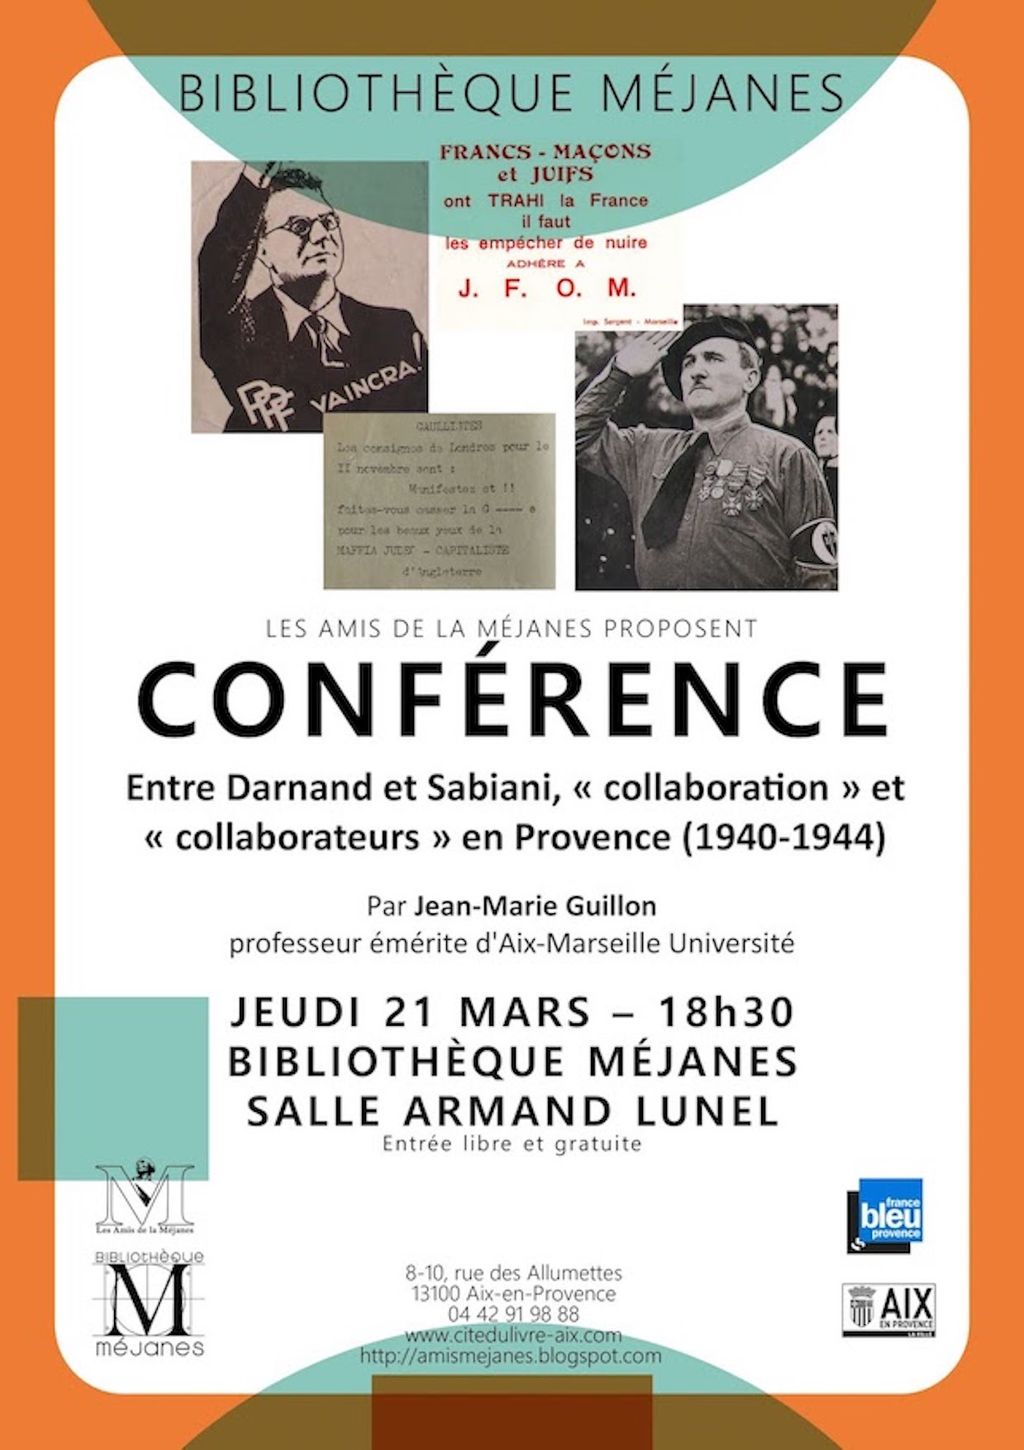 Entre Darnand et Sabiani "collaboration"et "collaborateurs" en Provence (1940-1944)